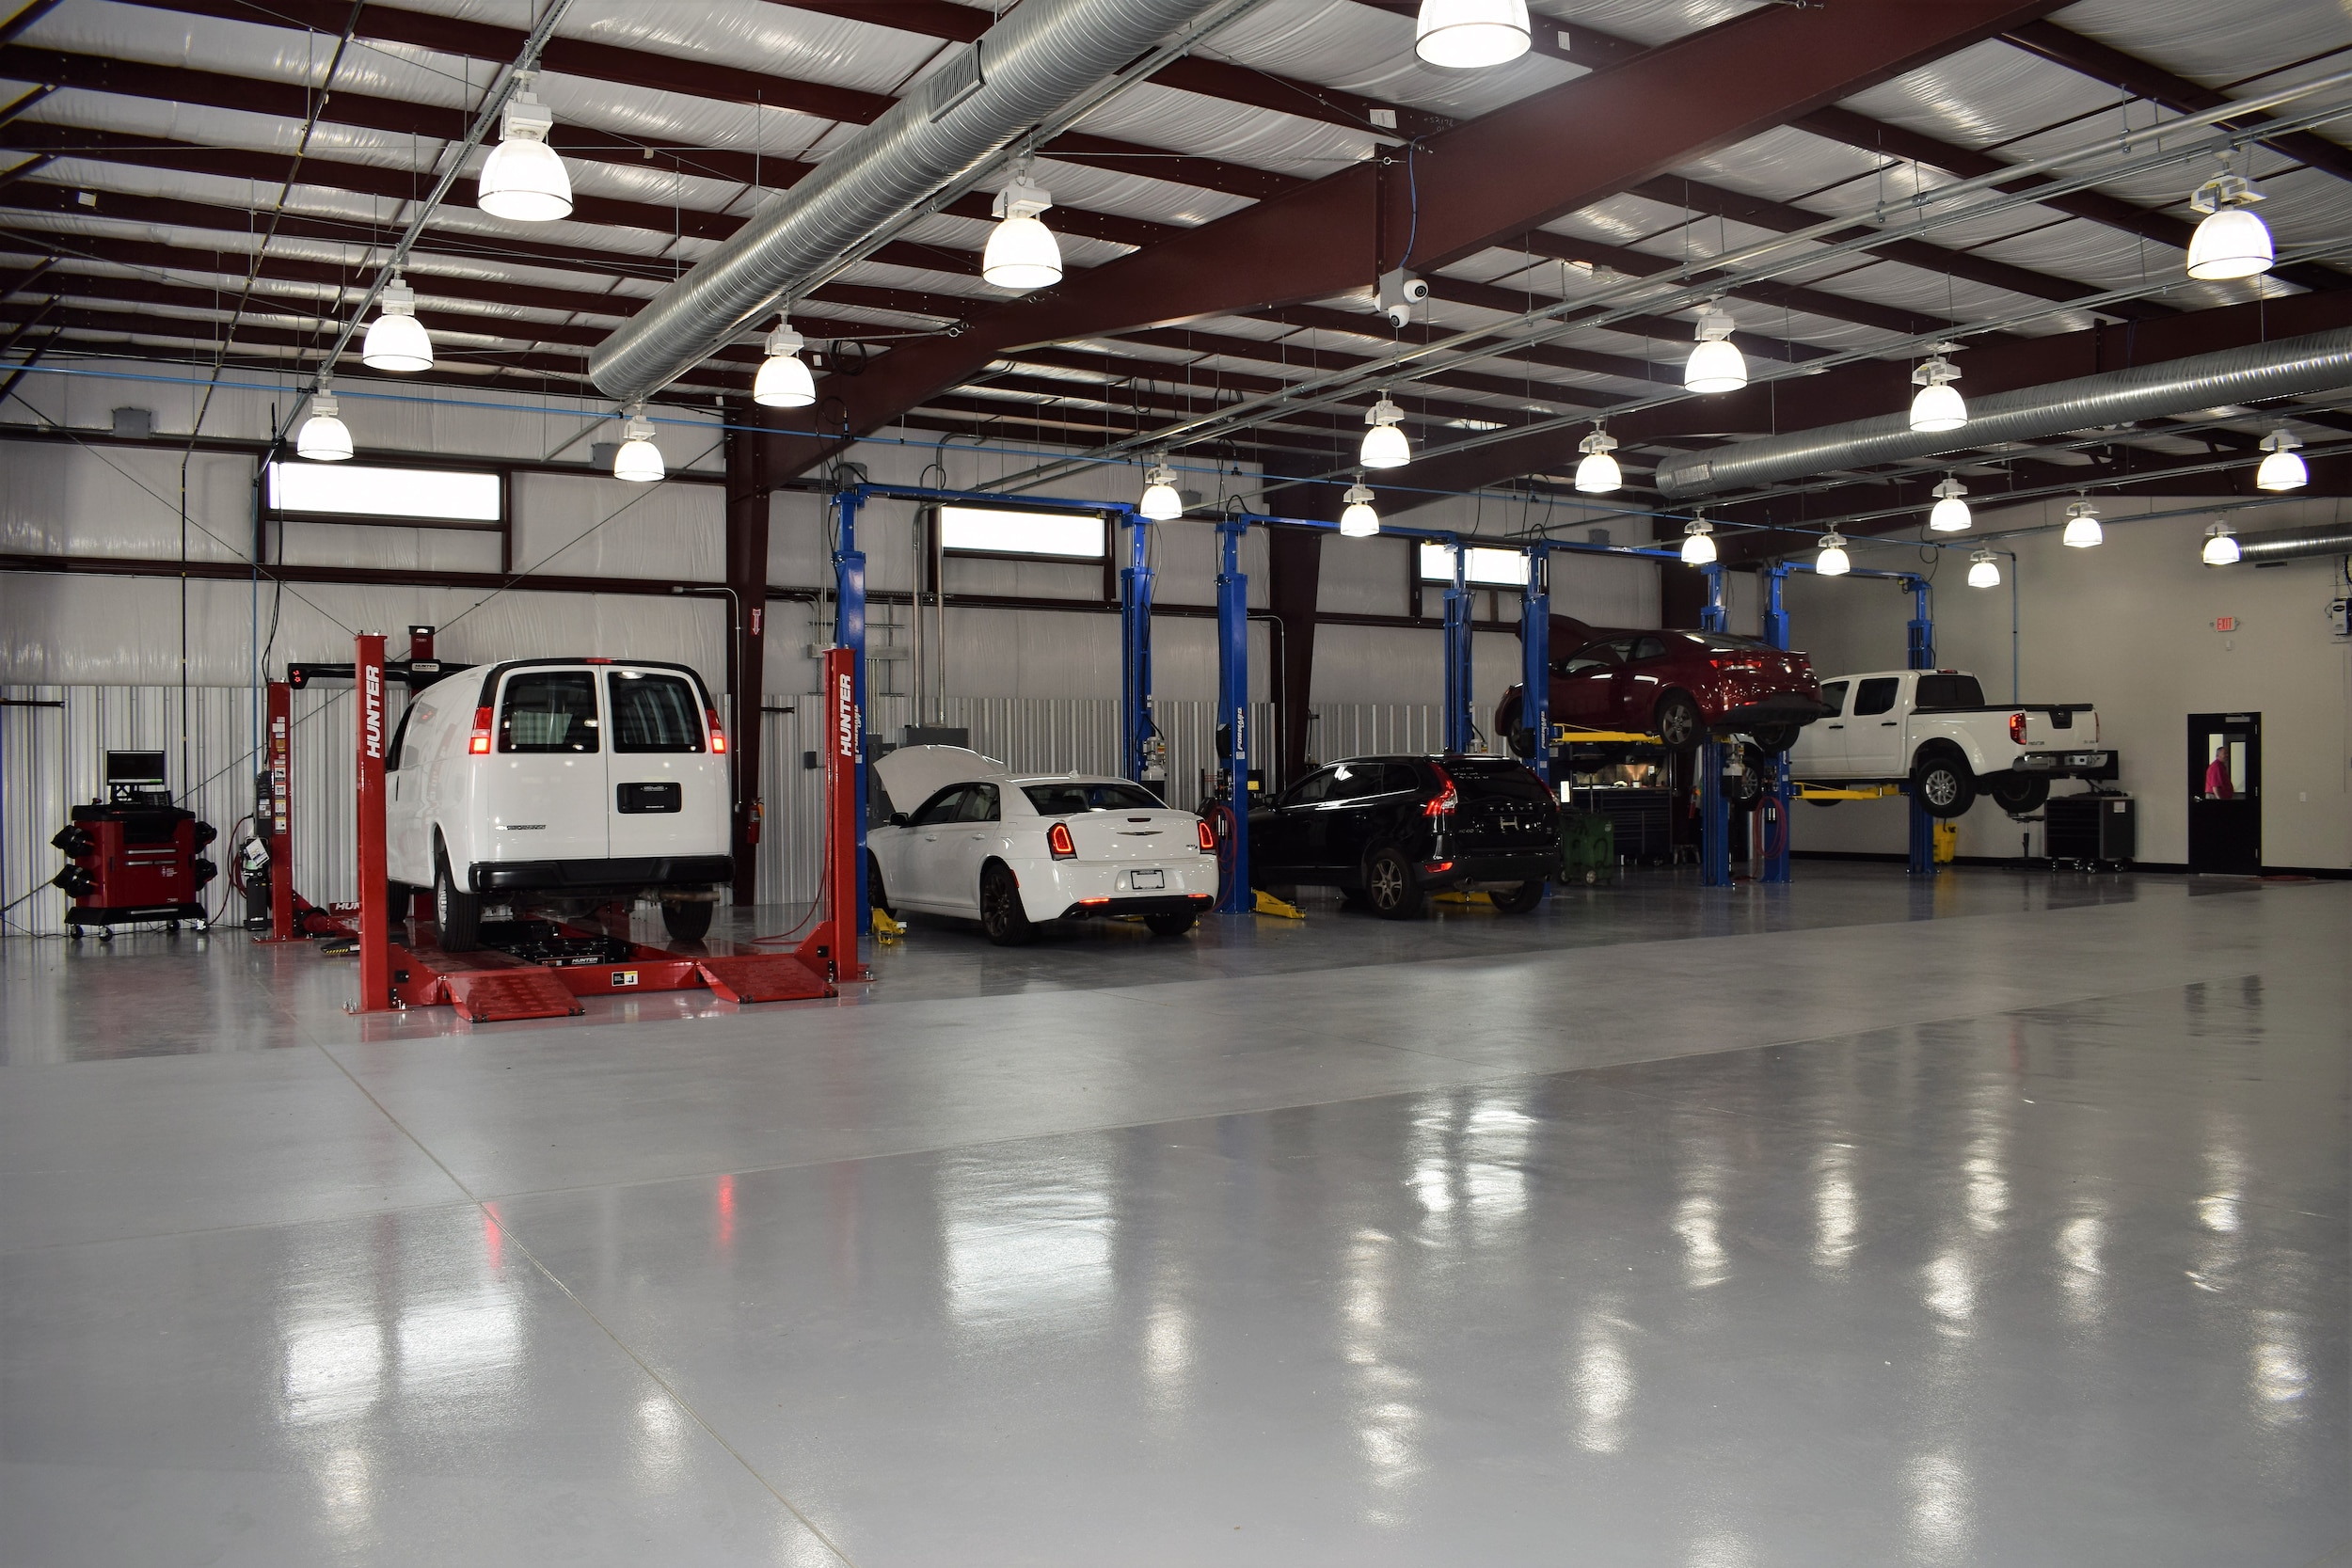 Find Auto Service & Car Repair in Greensboro NC | Greensboro Auto Center